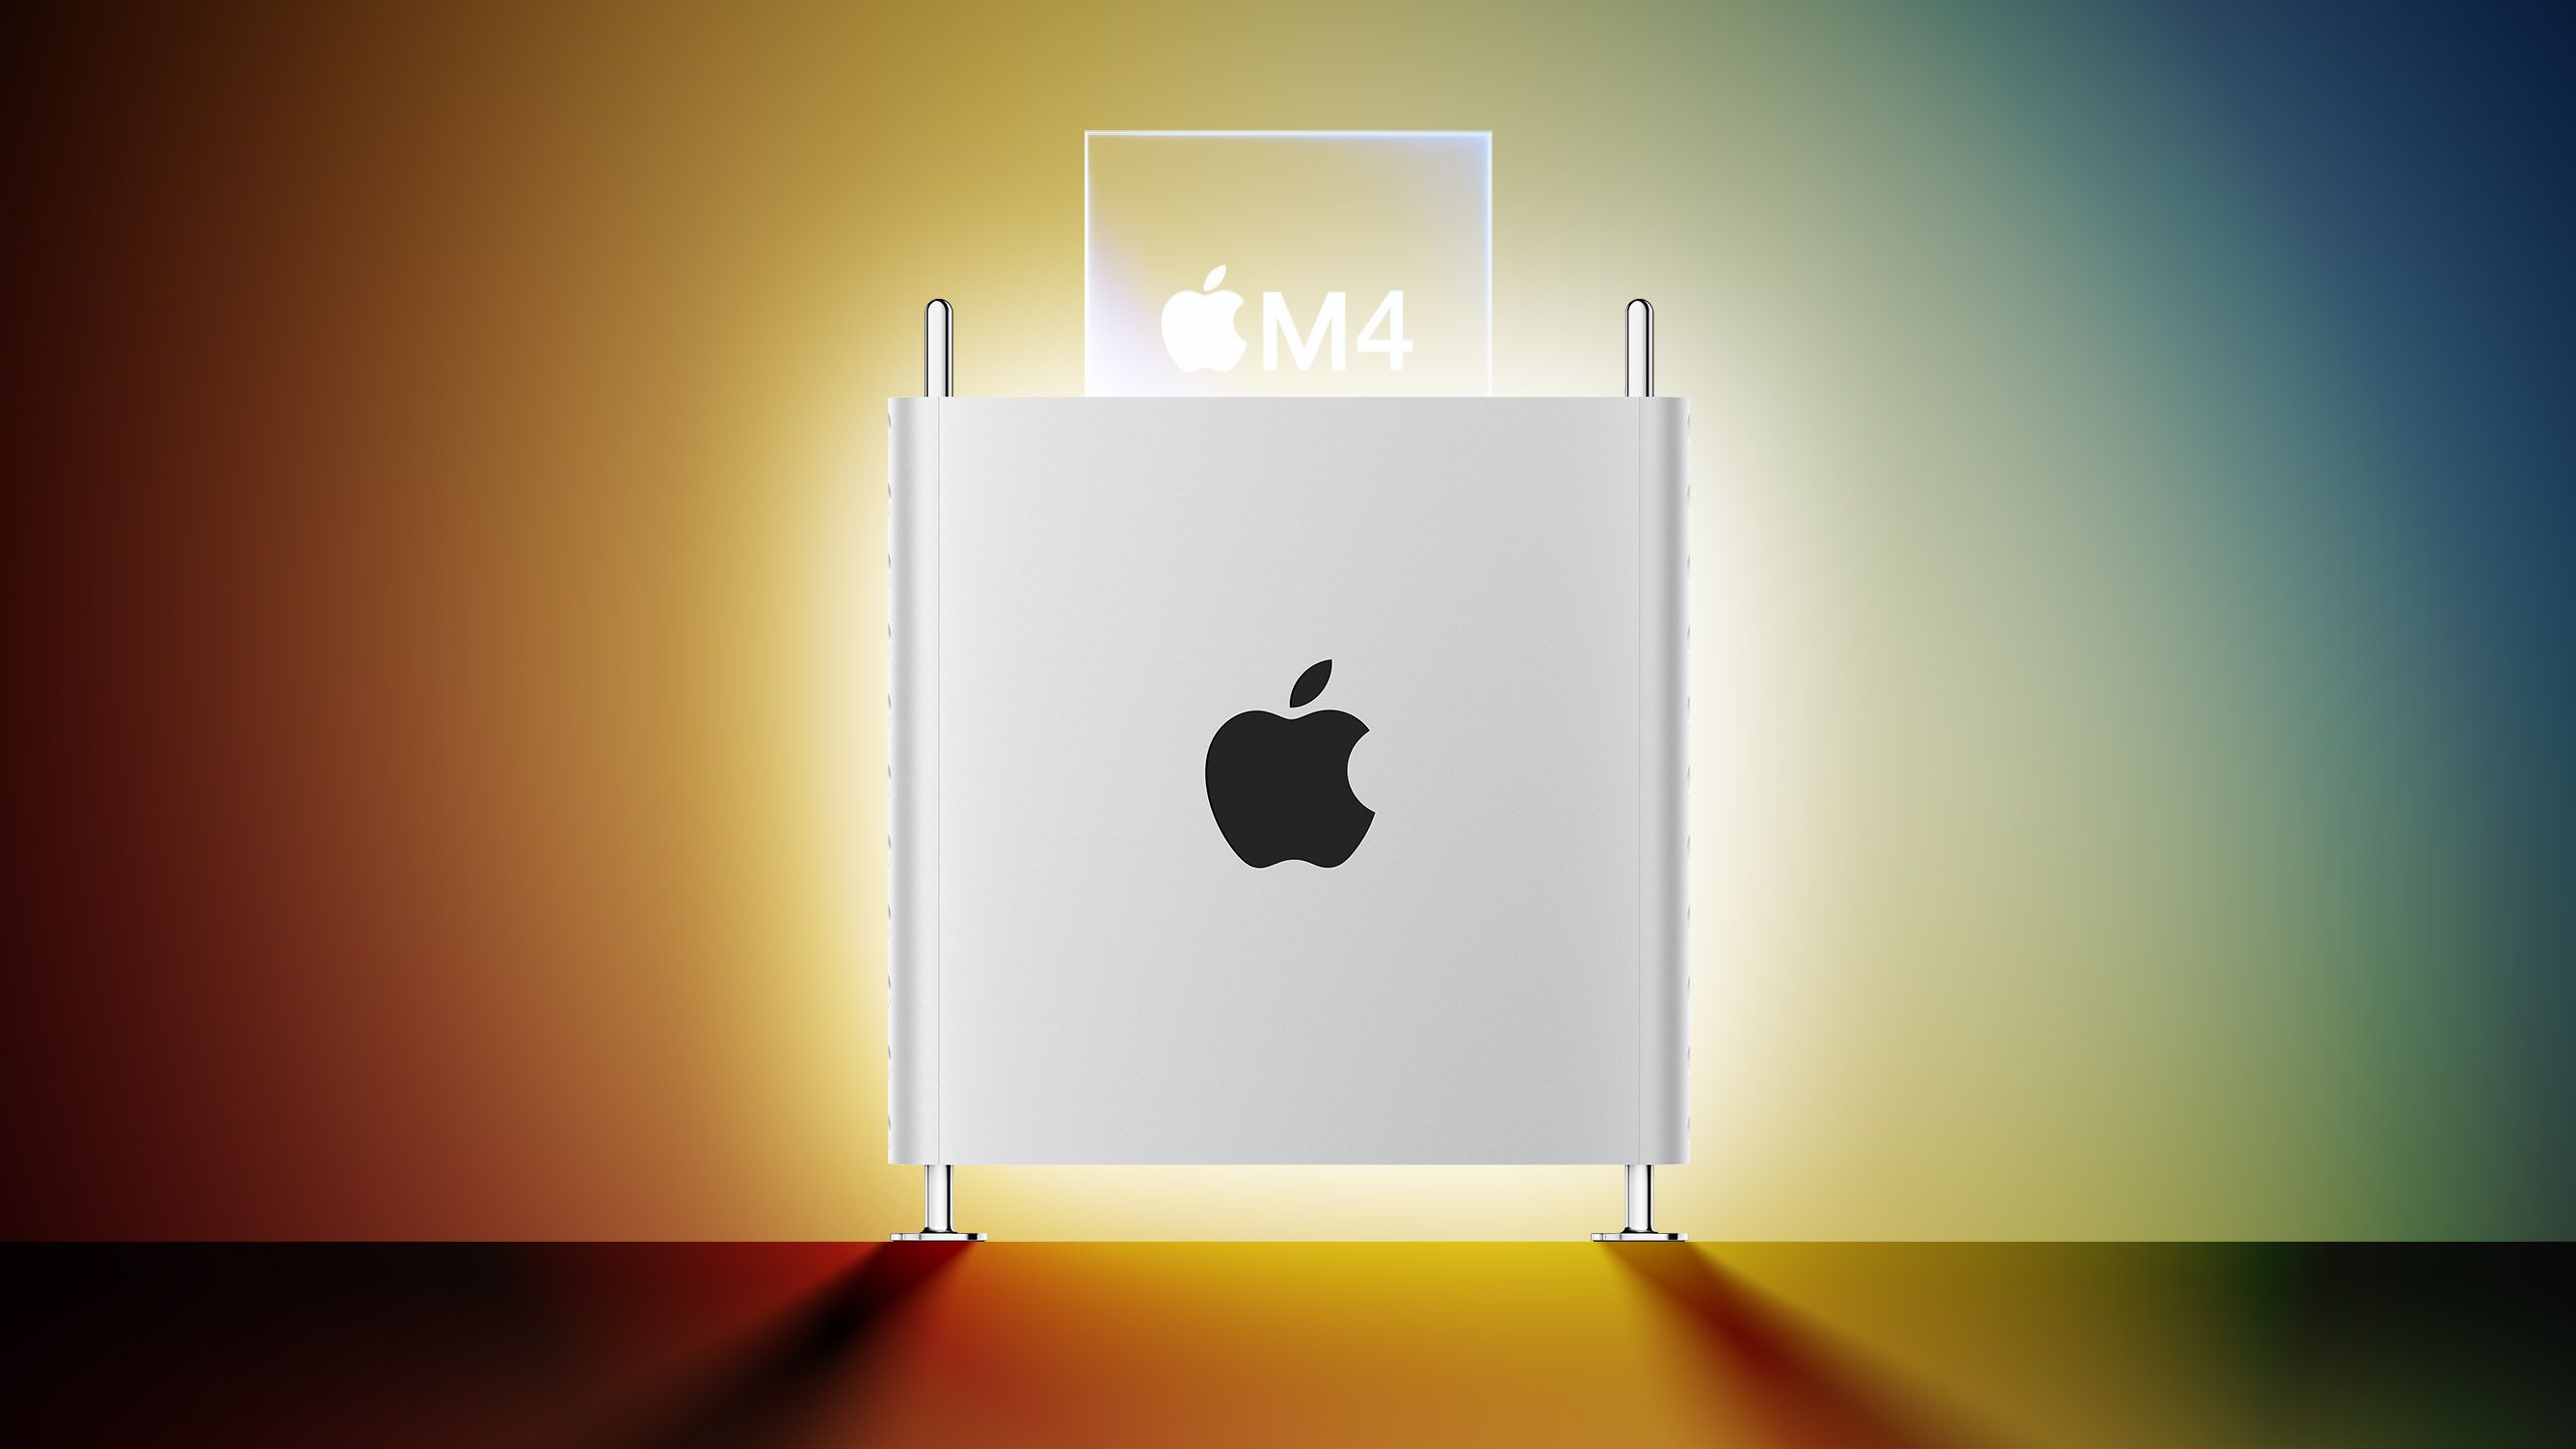 Apple M4 Mac Pro 2025 года: чего ожидать